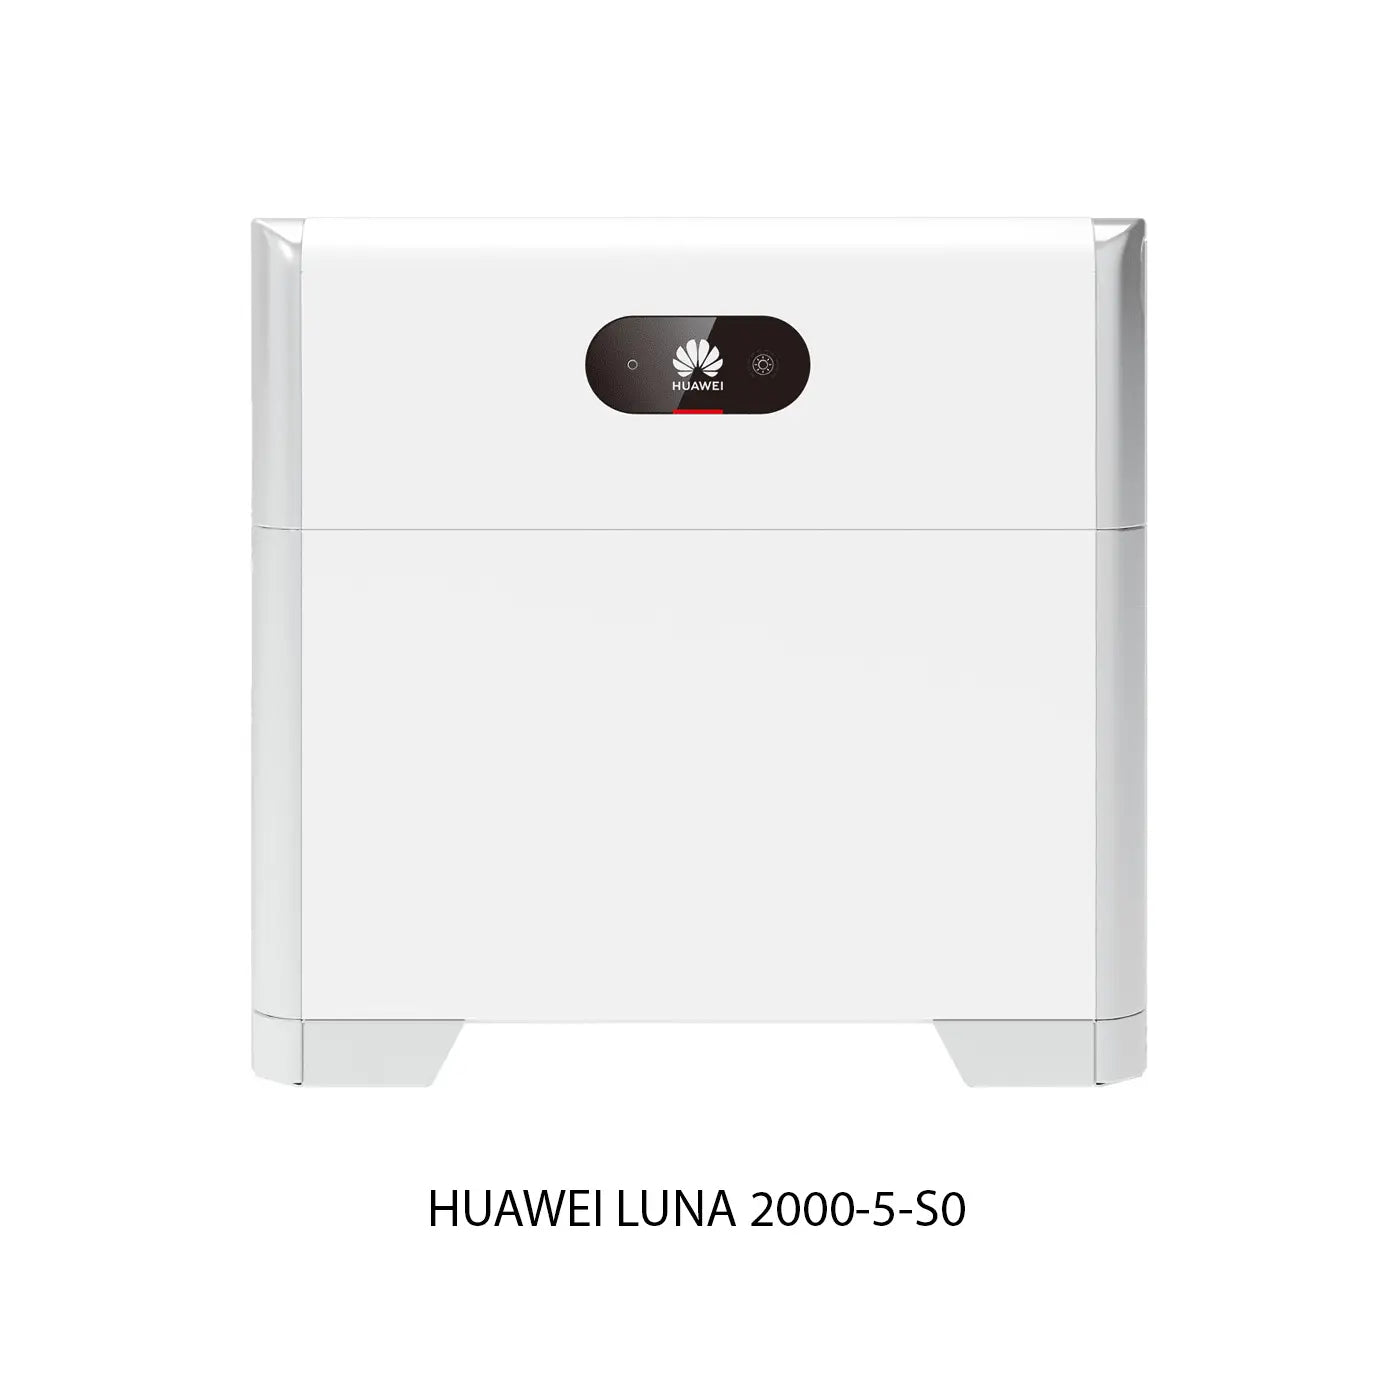 Huawei LUNA 2000-5-S0